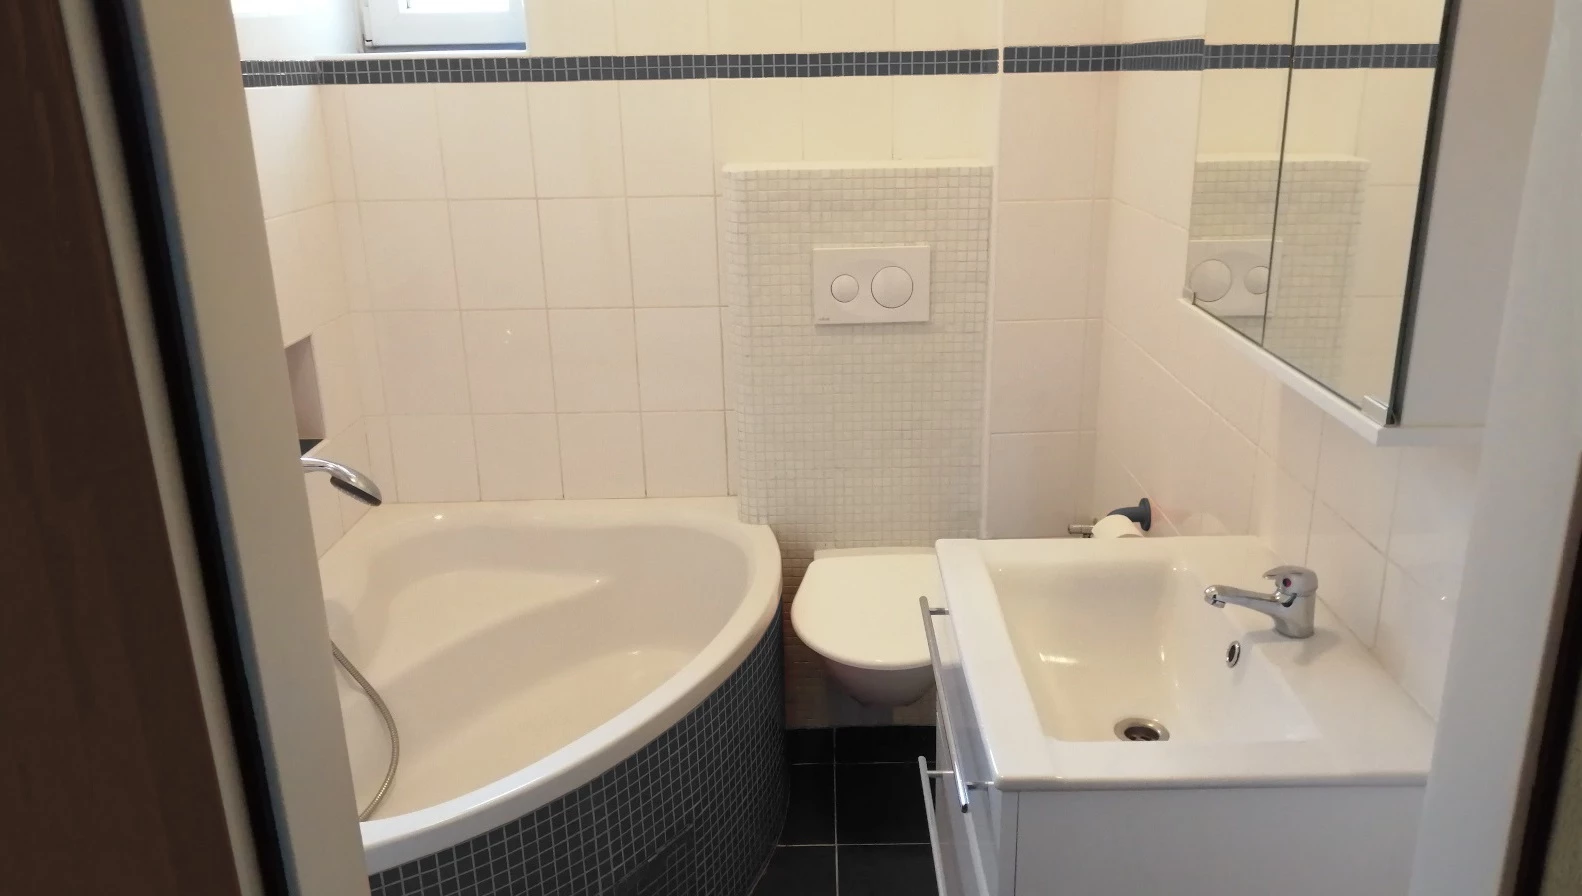 Standardní toaleta v nájemním bytě - závěsná toaleta, moderní umyvadlo, rohová vana, skříňka pod umyvadlem, skříňka nad umyvadlem